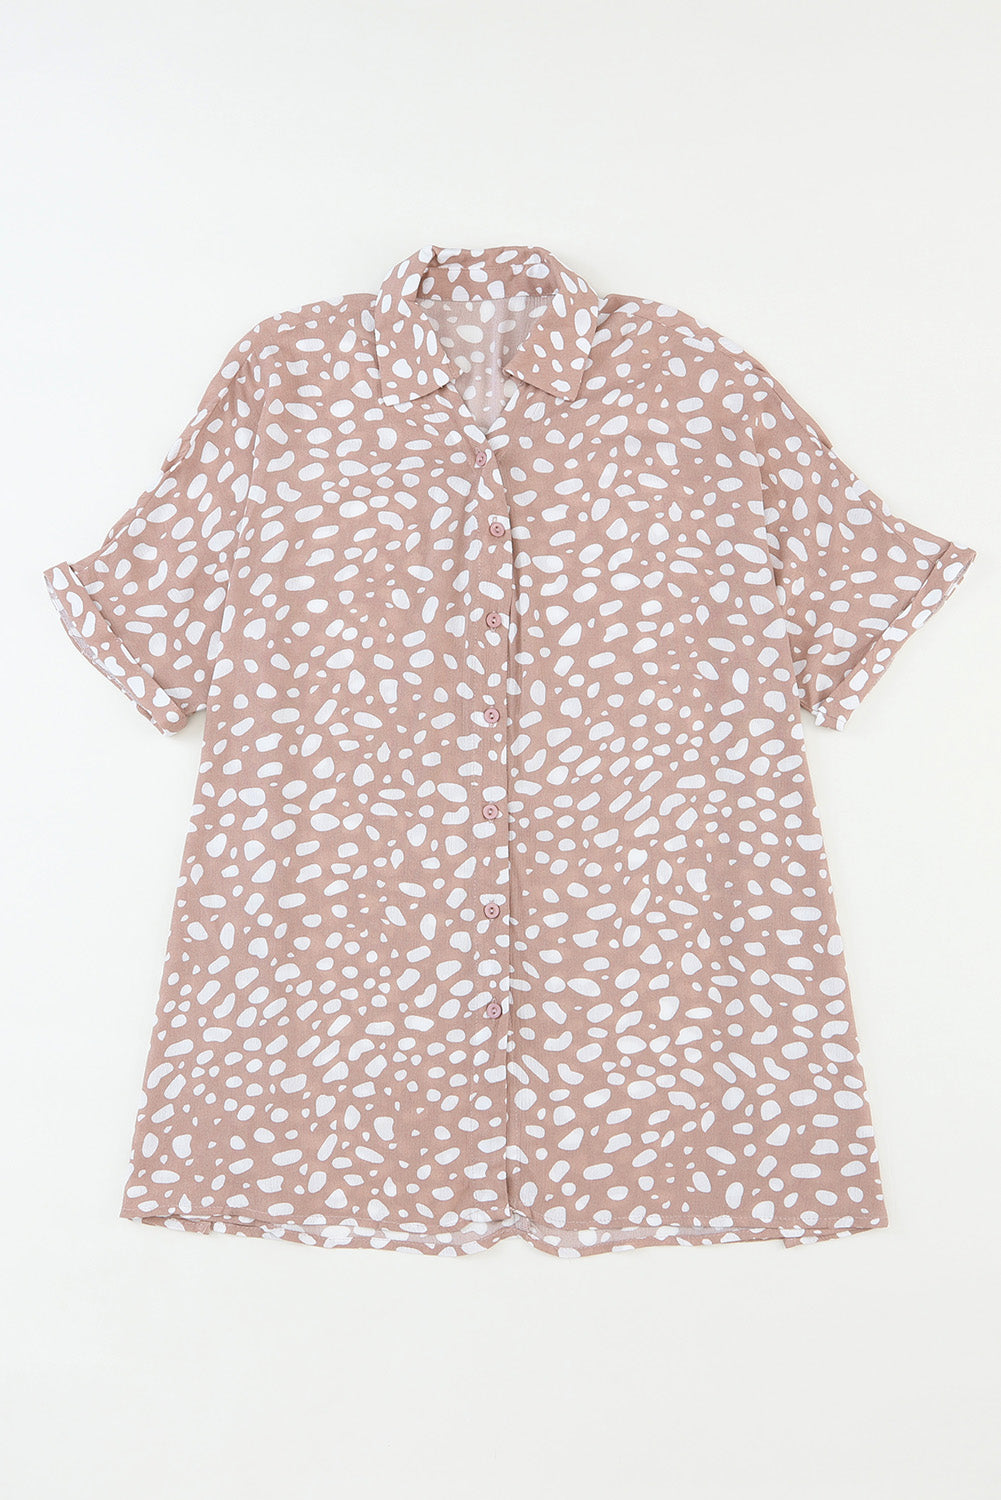 Rosafarbenes, kurzärmliges Twist-Hemd mit Leopardenmuster